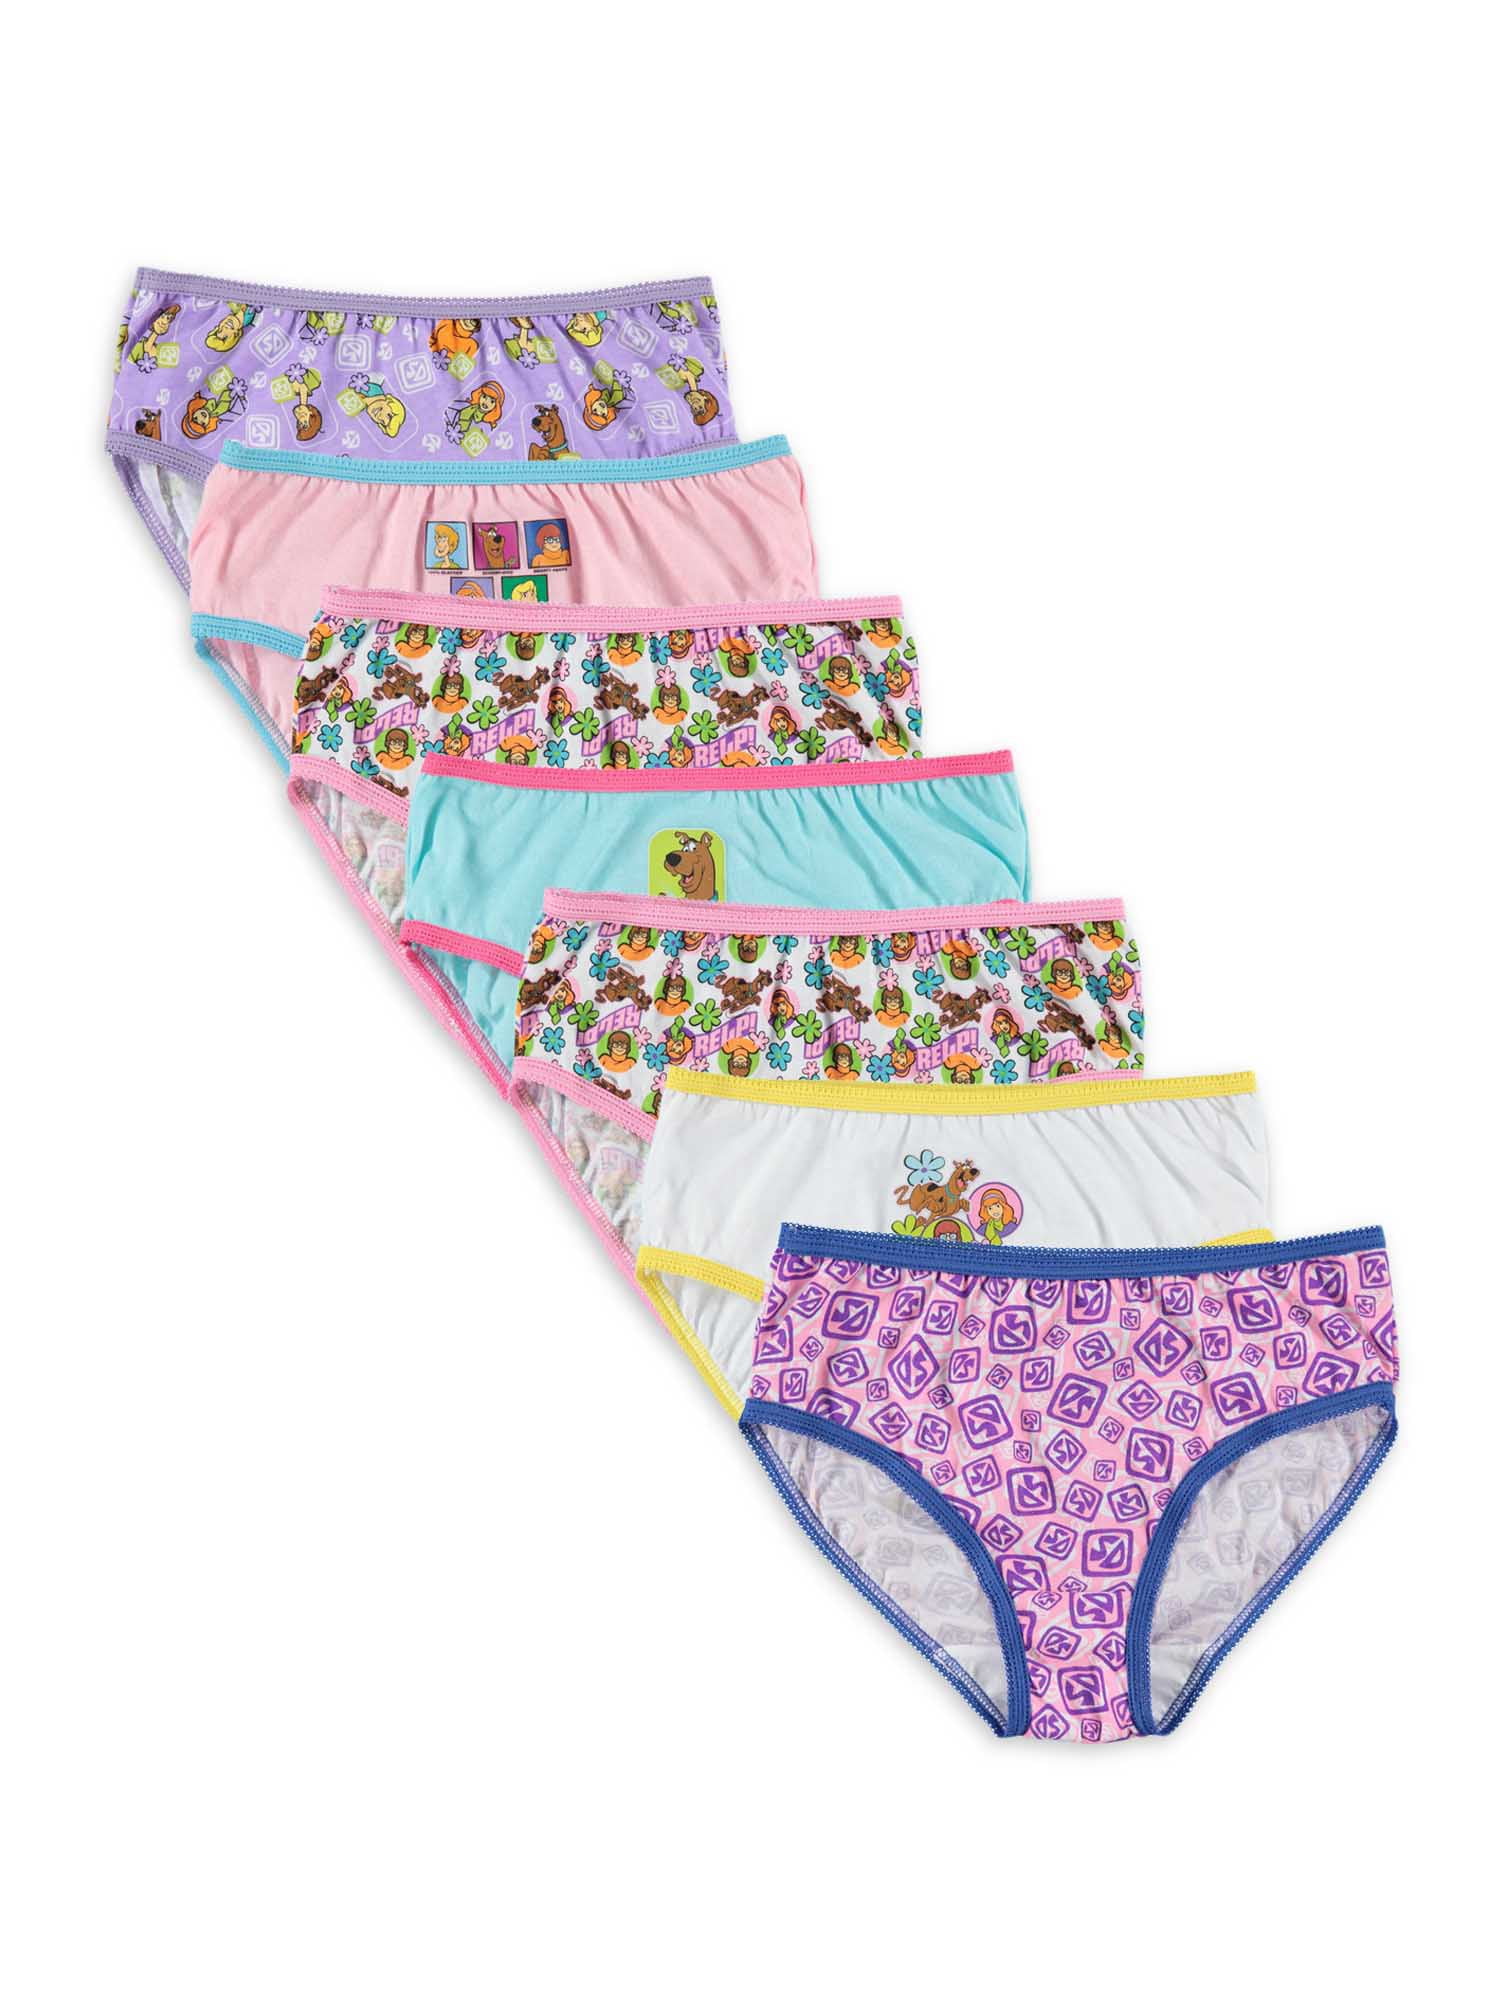 My Little Pony Girls Underwear Briefs 6-Pack